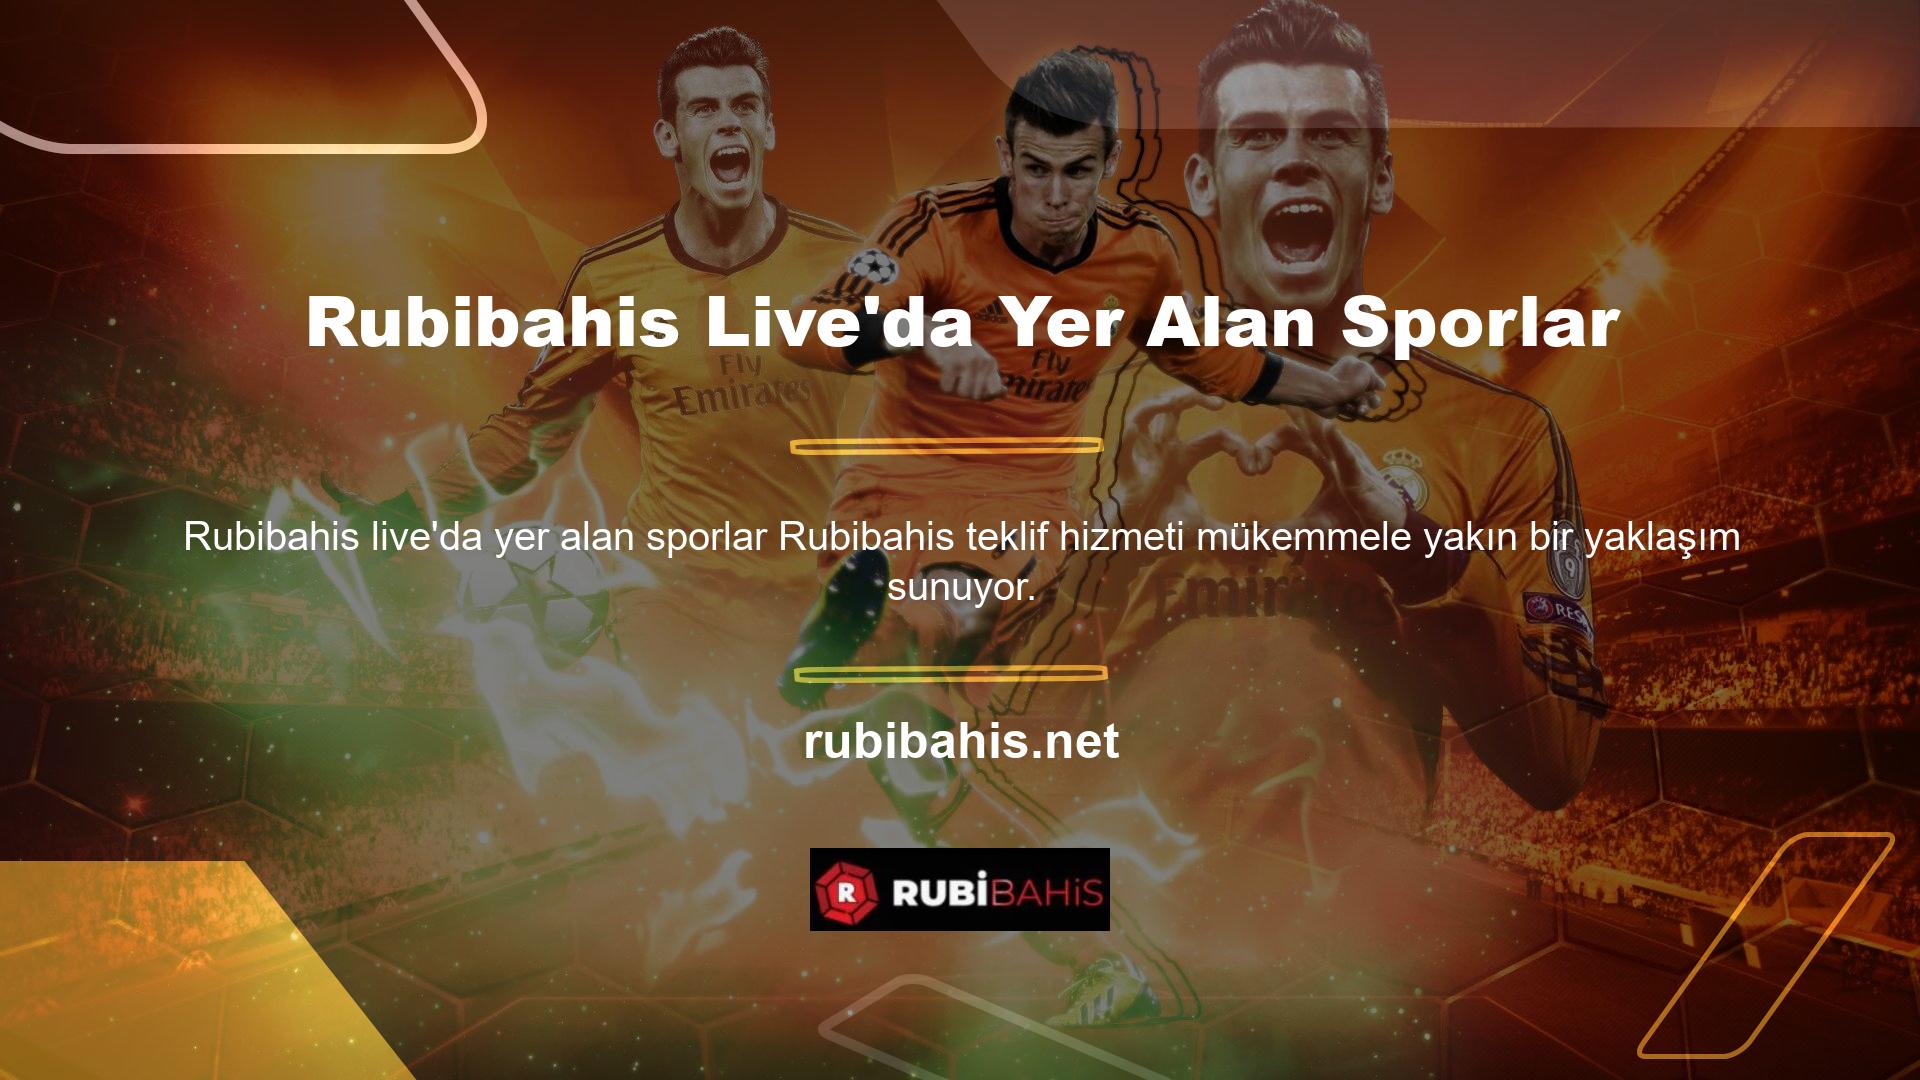 Bu golün ardından kullanıcı öncelikle Rubibahis canlı bahislerinde hangi sporların sunulduğunu sorar